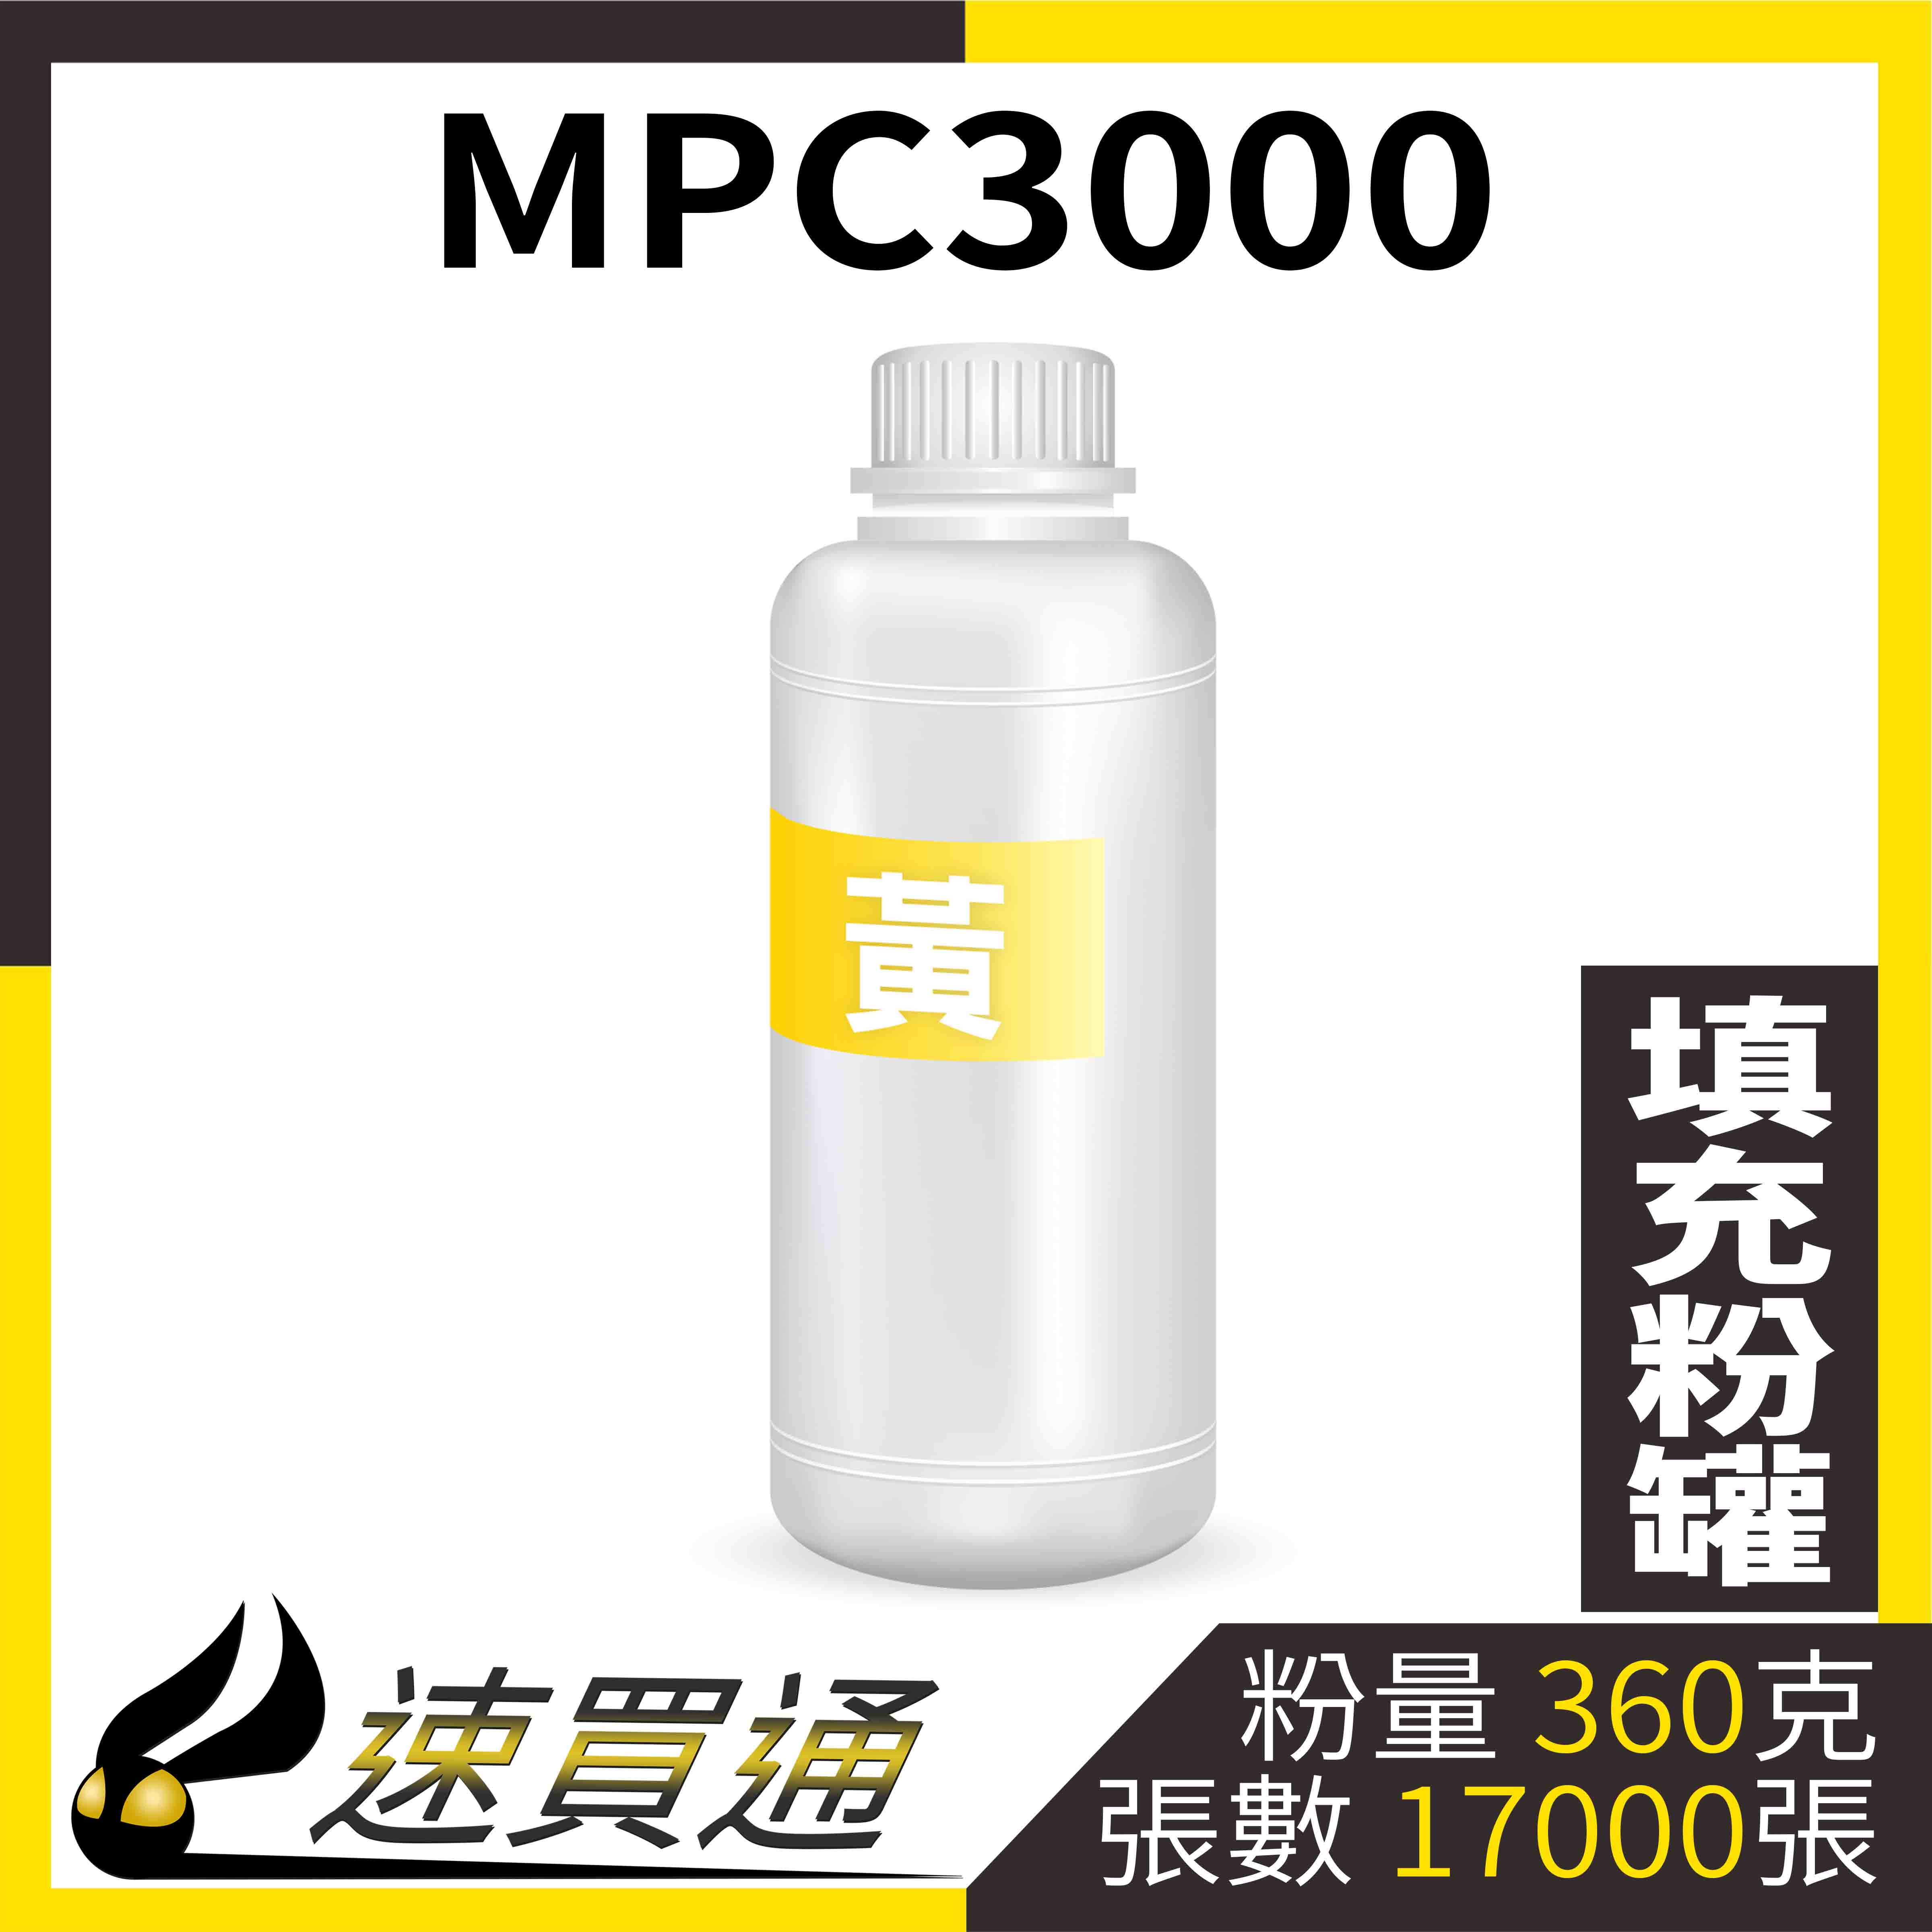 【速買通】RICOH MPC3000 黃 填充式碳粉罐